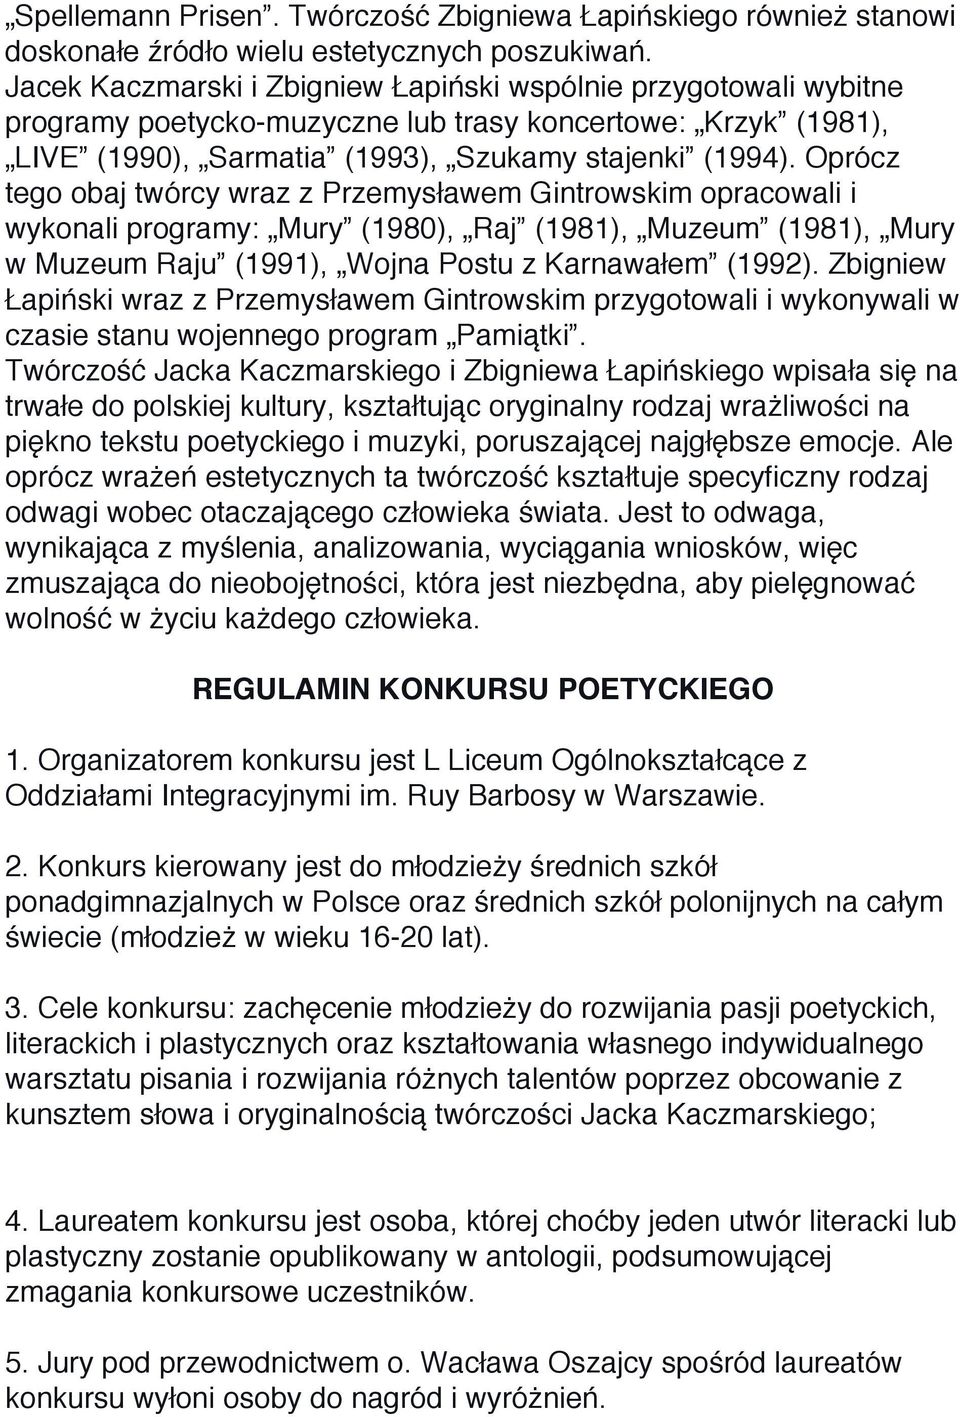 Oprócz tego obaj twórcy wraz z Przemysławem Gintrowskim opracowali i wykonali programy: Mury (1980), Raj (1981), Muzeum (1981), Mury w Muzeum Raju (1991), Wojna Postu z Karnawałem (1992).